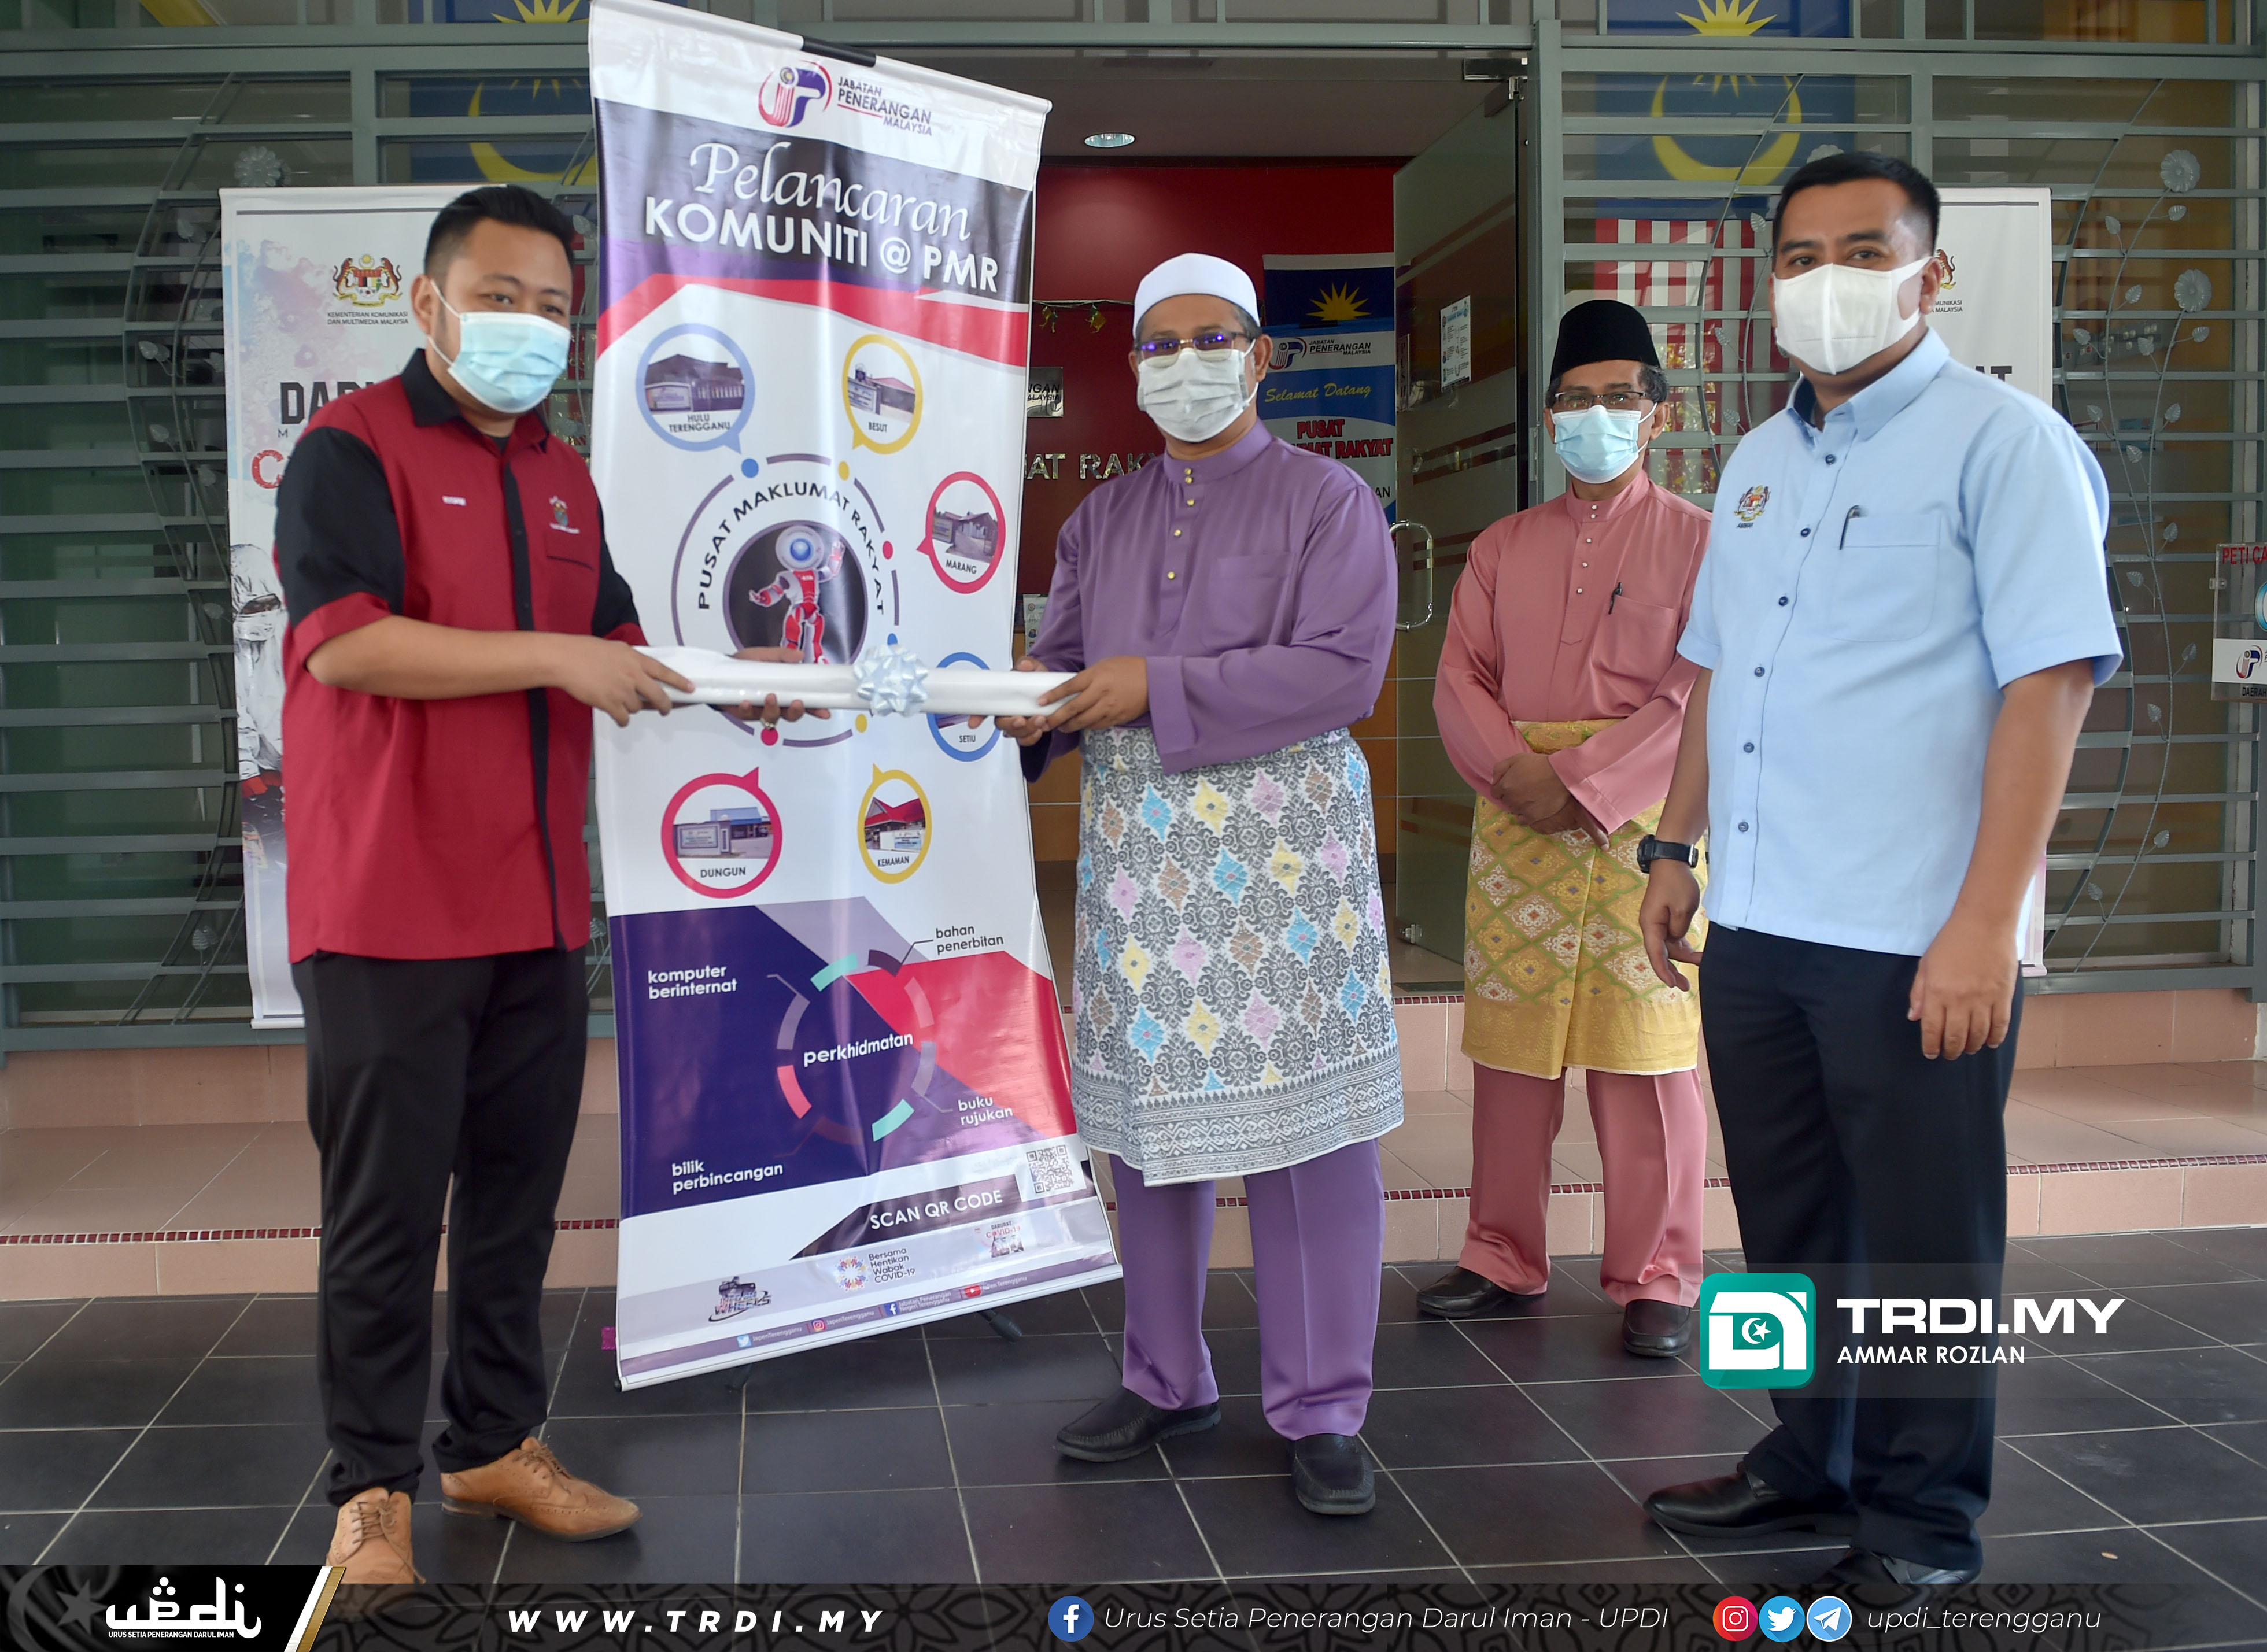 YB Ustaz Mohd Nor bin Hamzah, Pengerusi Jawatankuasa Pembangunan Insan, Dakwah dan Penerangan Negeri menghadiri Program Walkabout Pelancaran Komuniti @ PMR Peringkat Negeri Terengganu Tahun 2021.